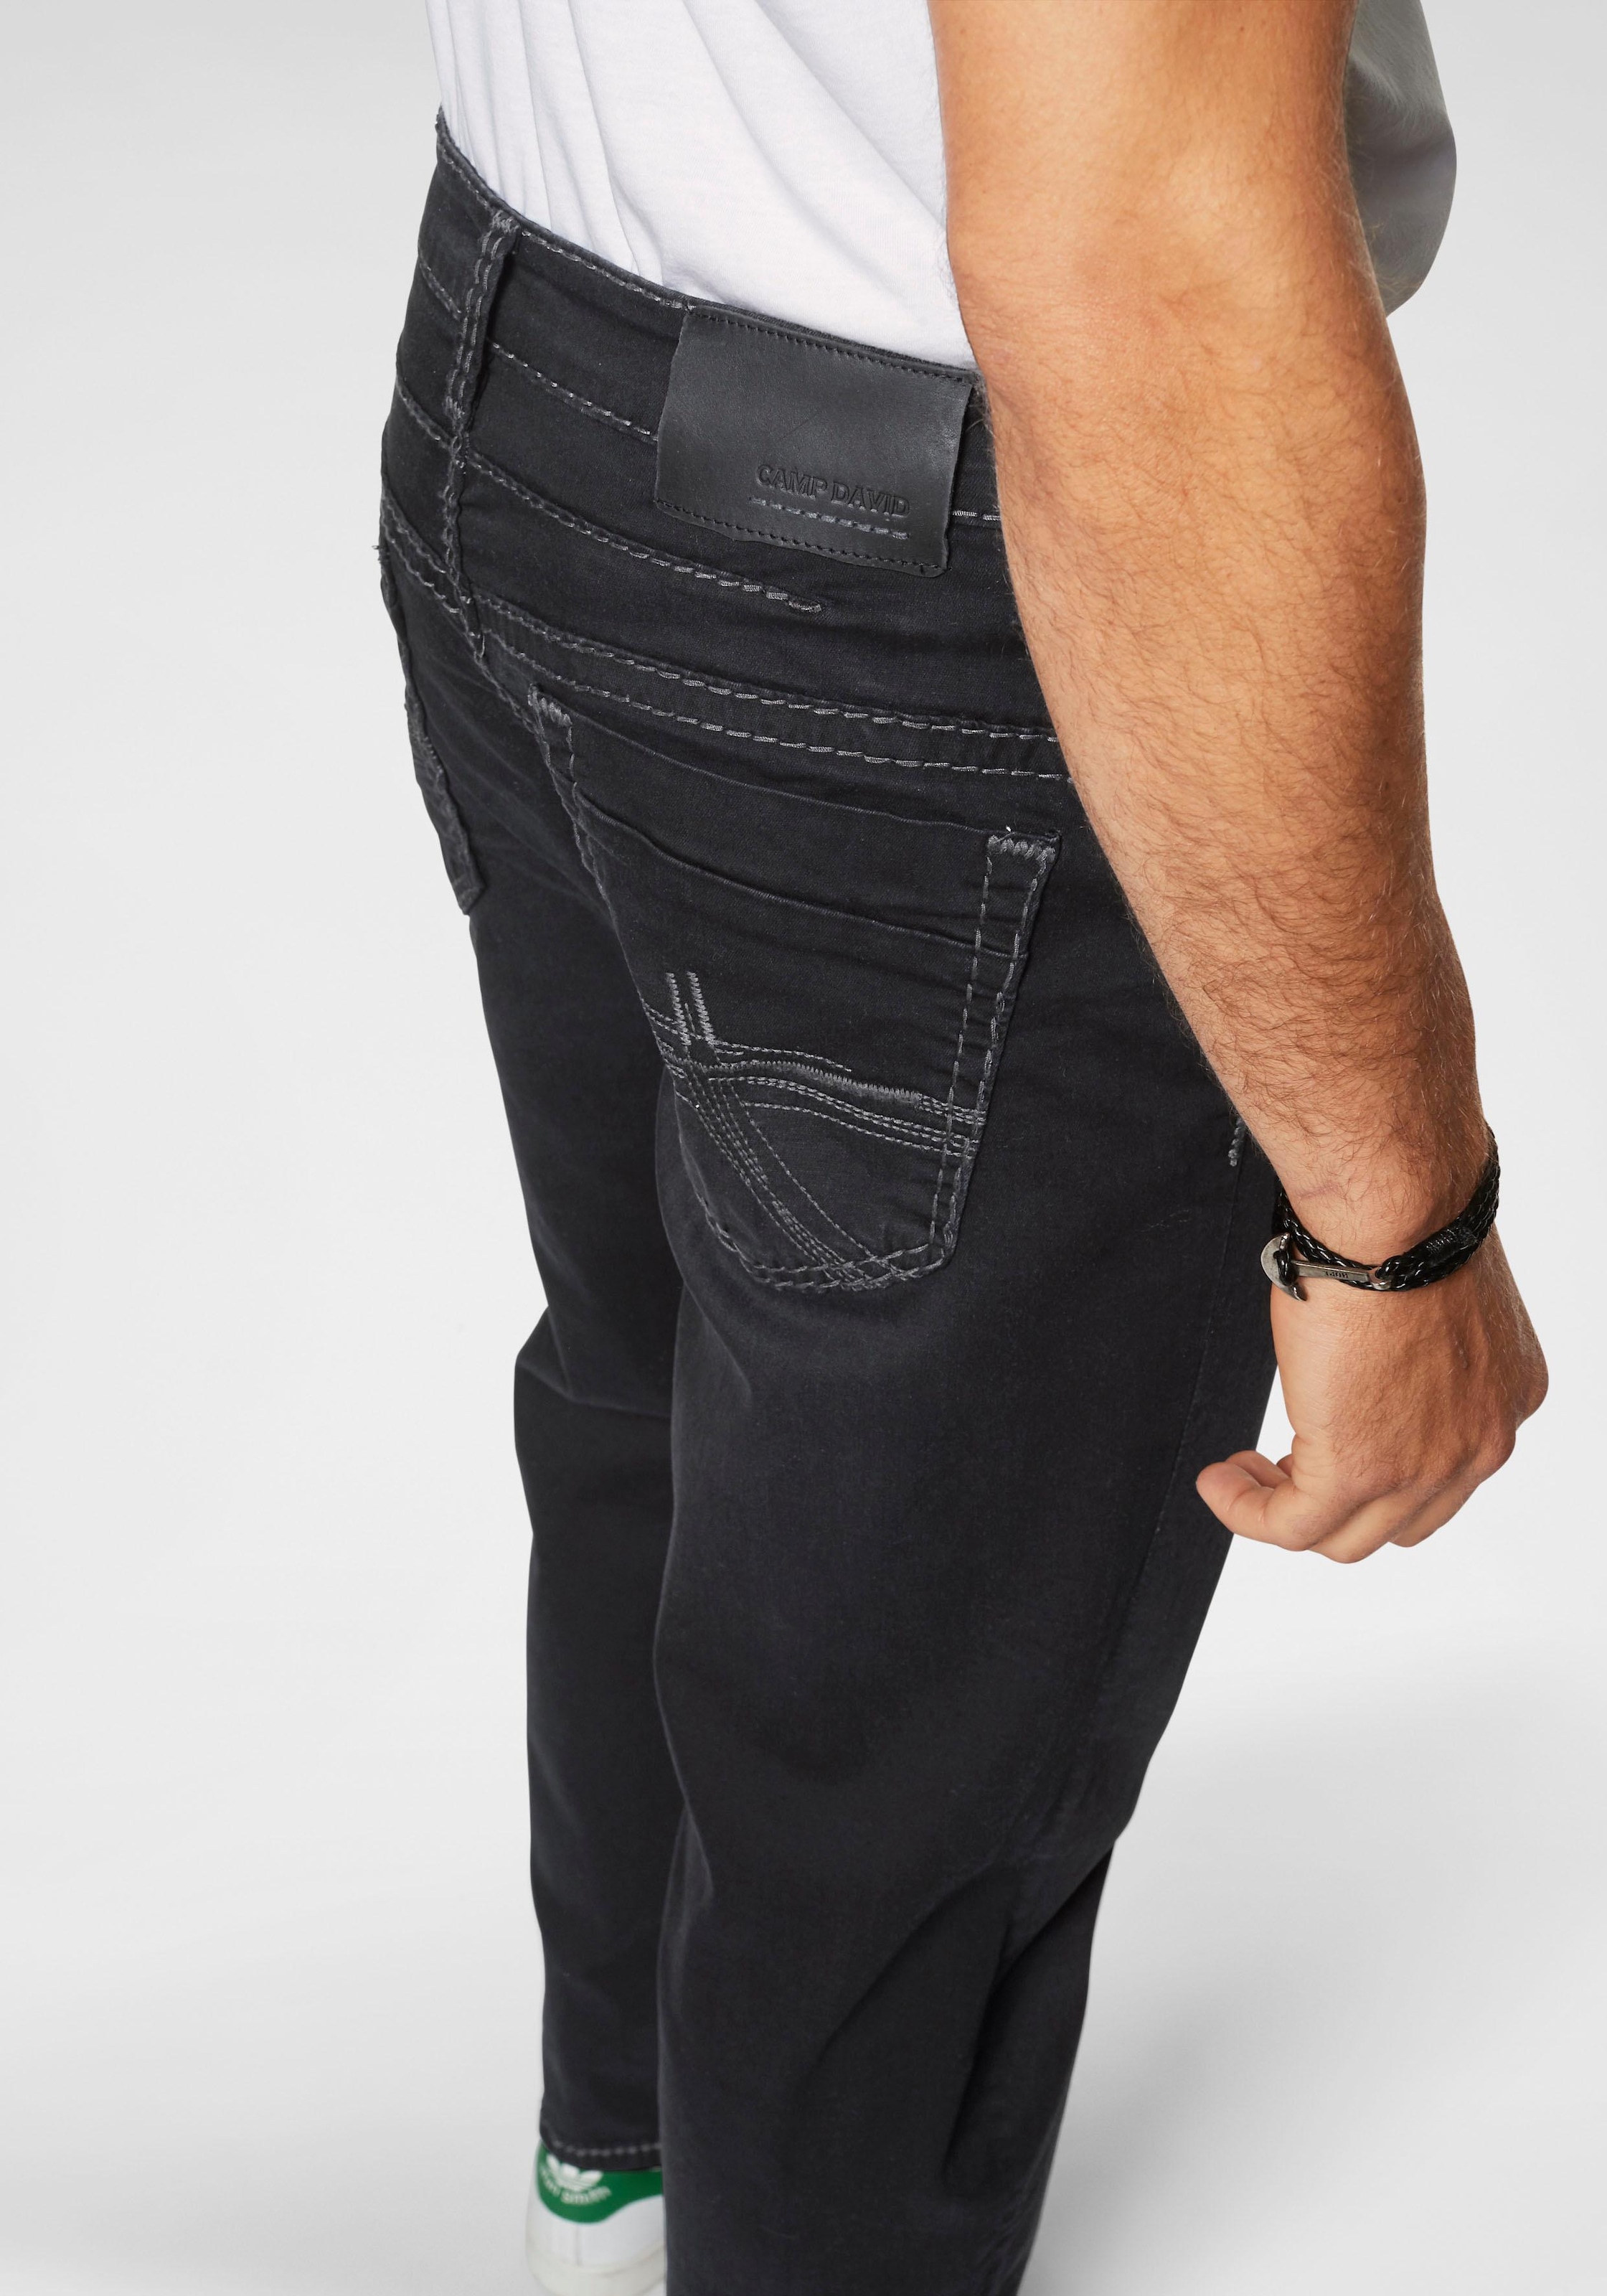 CAMP DAVID Loose-fit-Jeans, mit markanten Nähten und Stretch